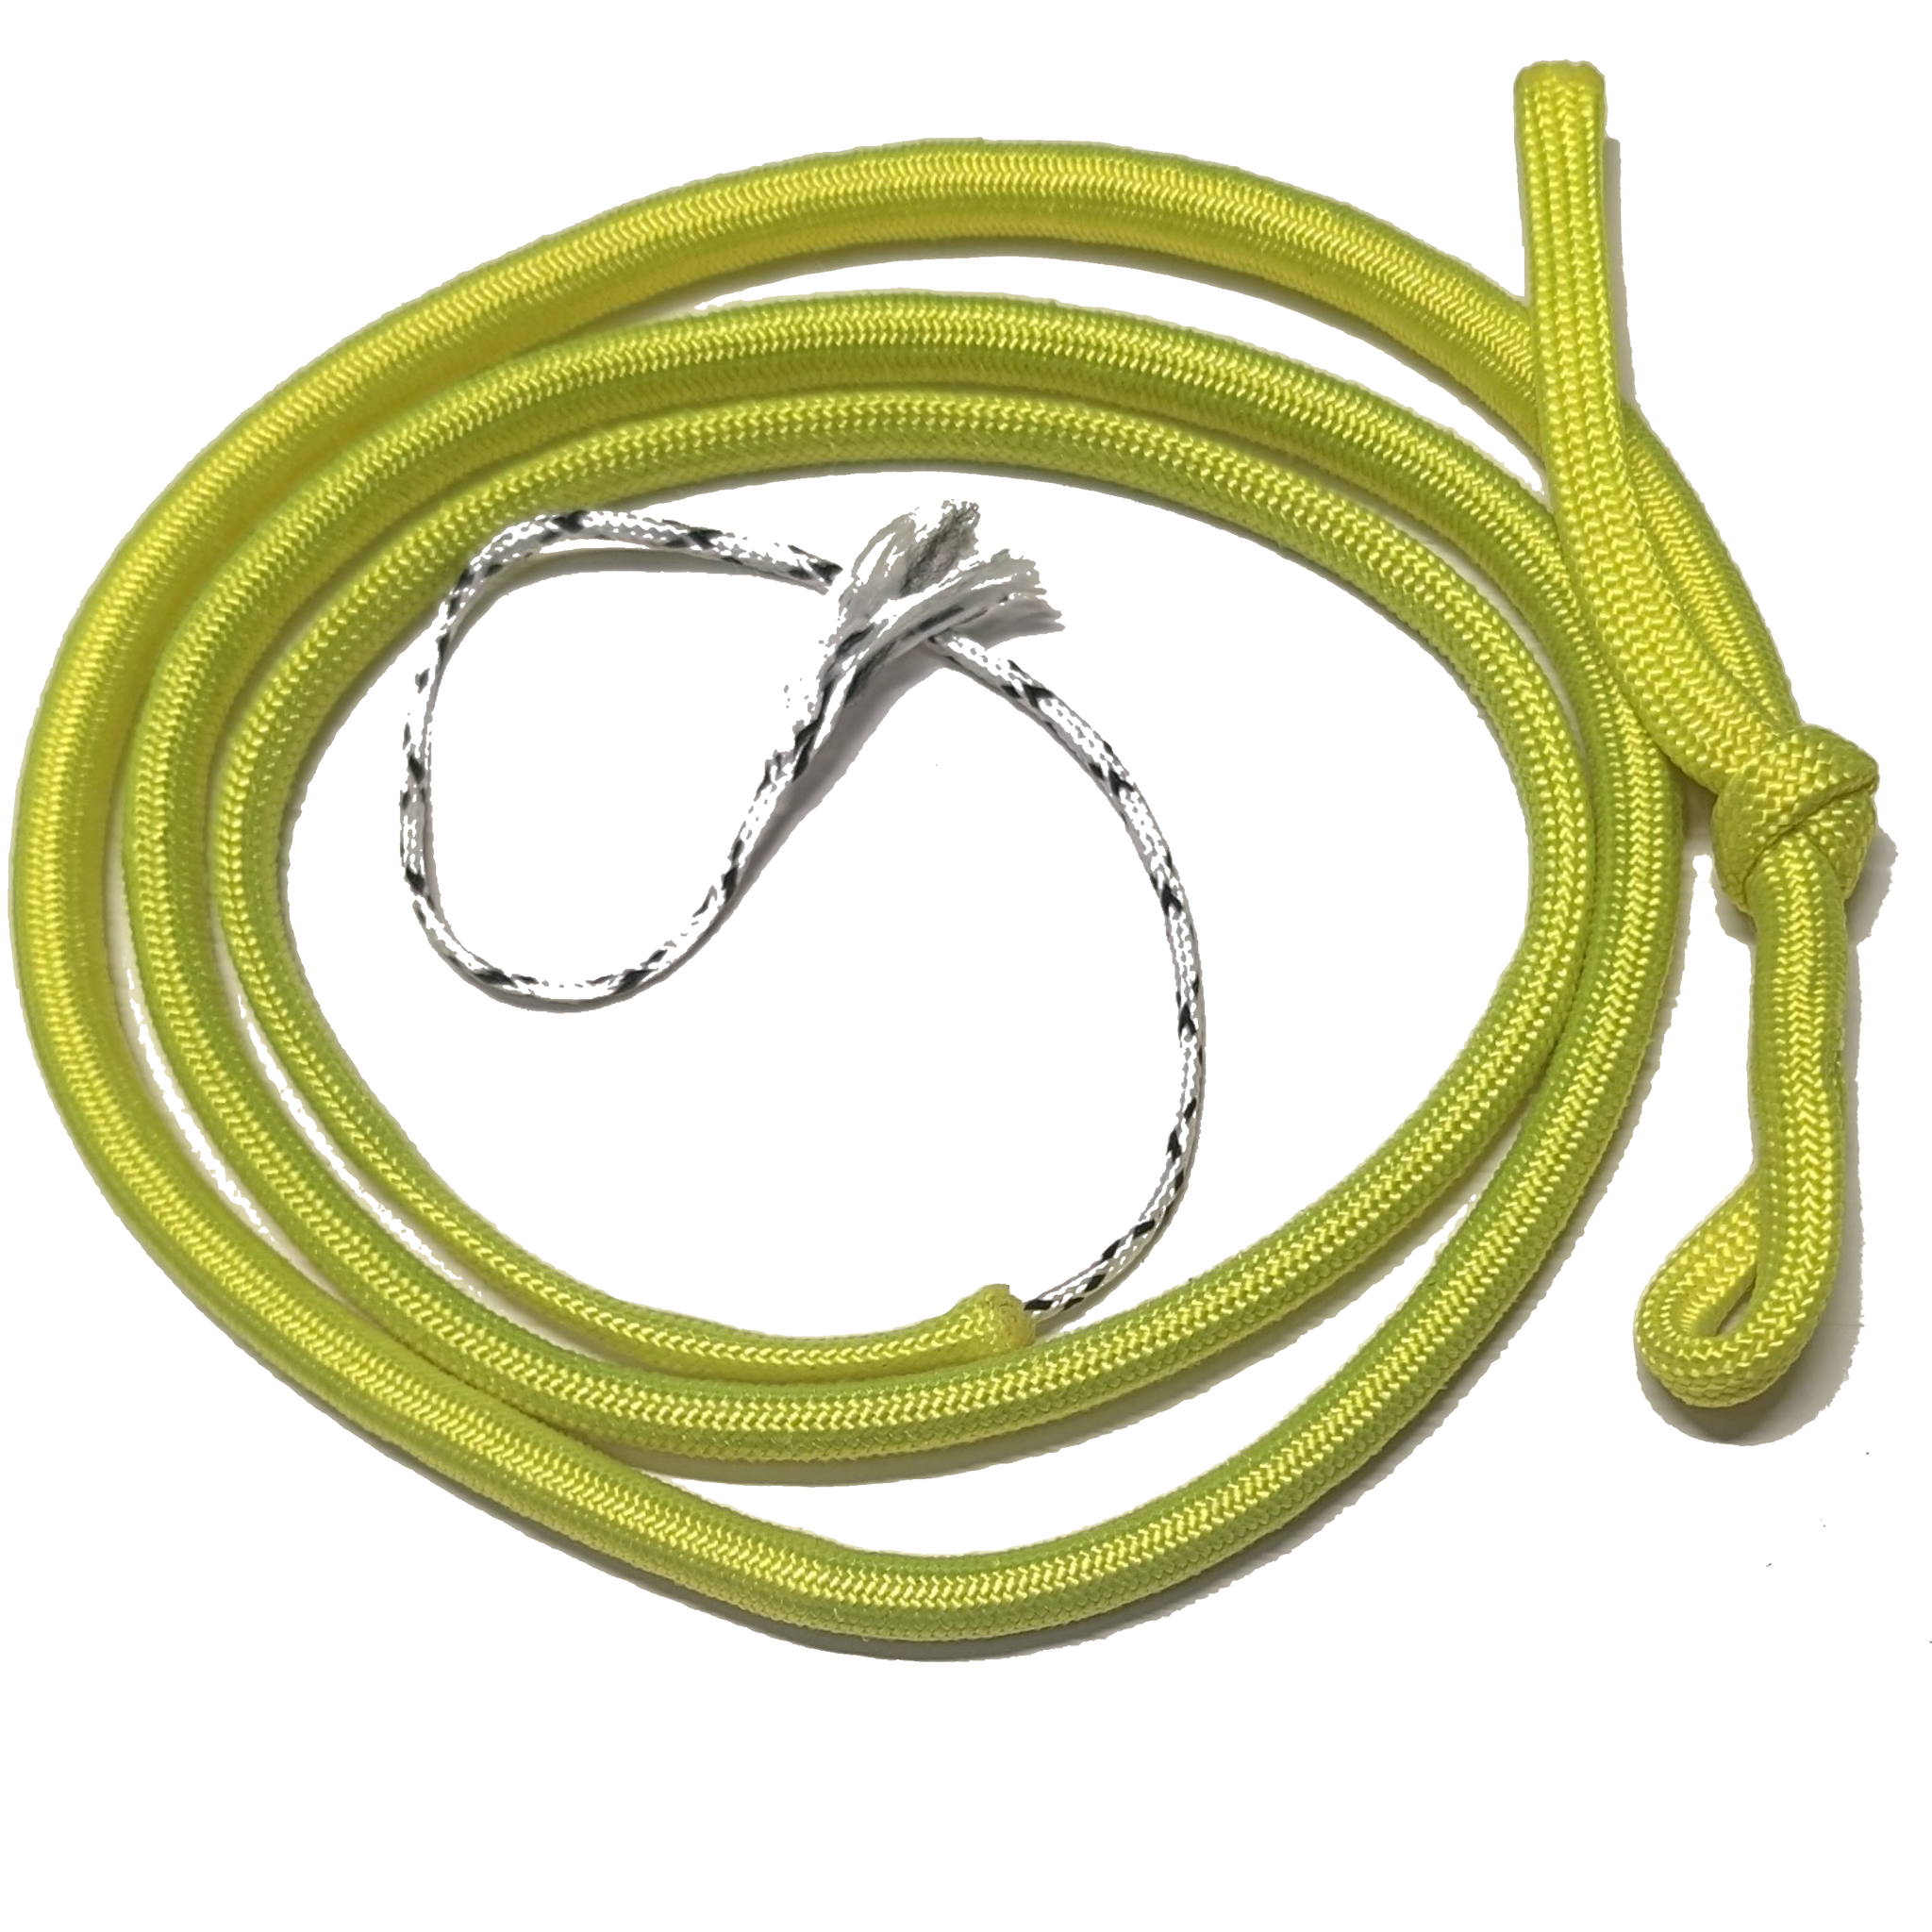 Snake Whip - Danger Noodle Fingertip Whip Thicker